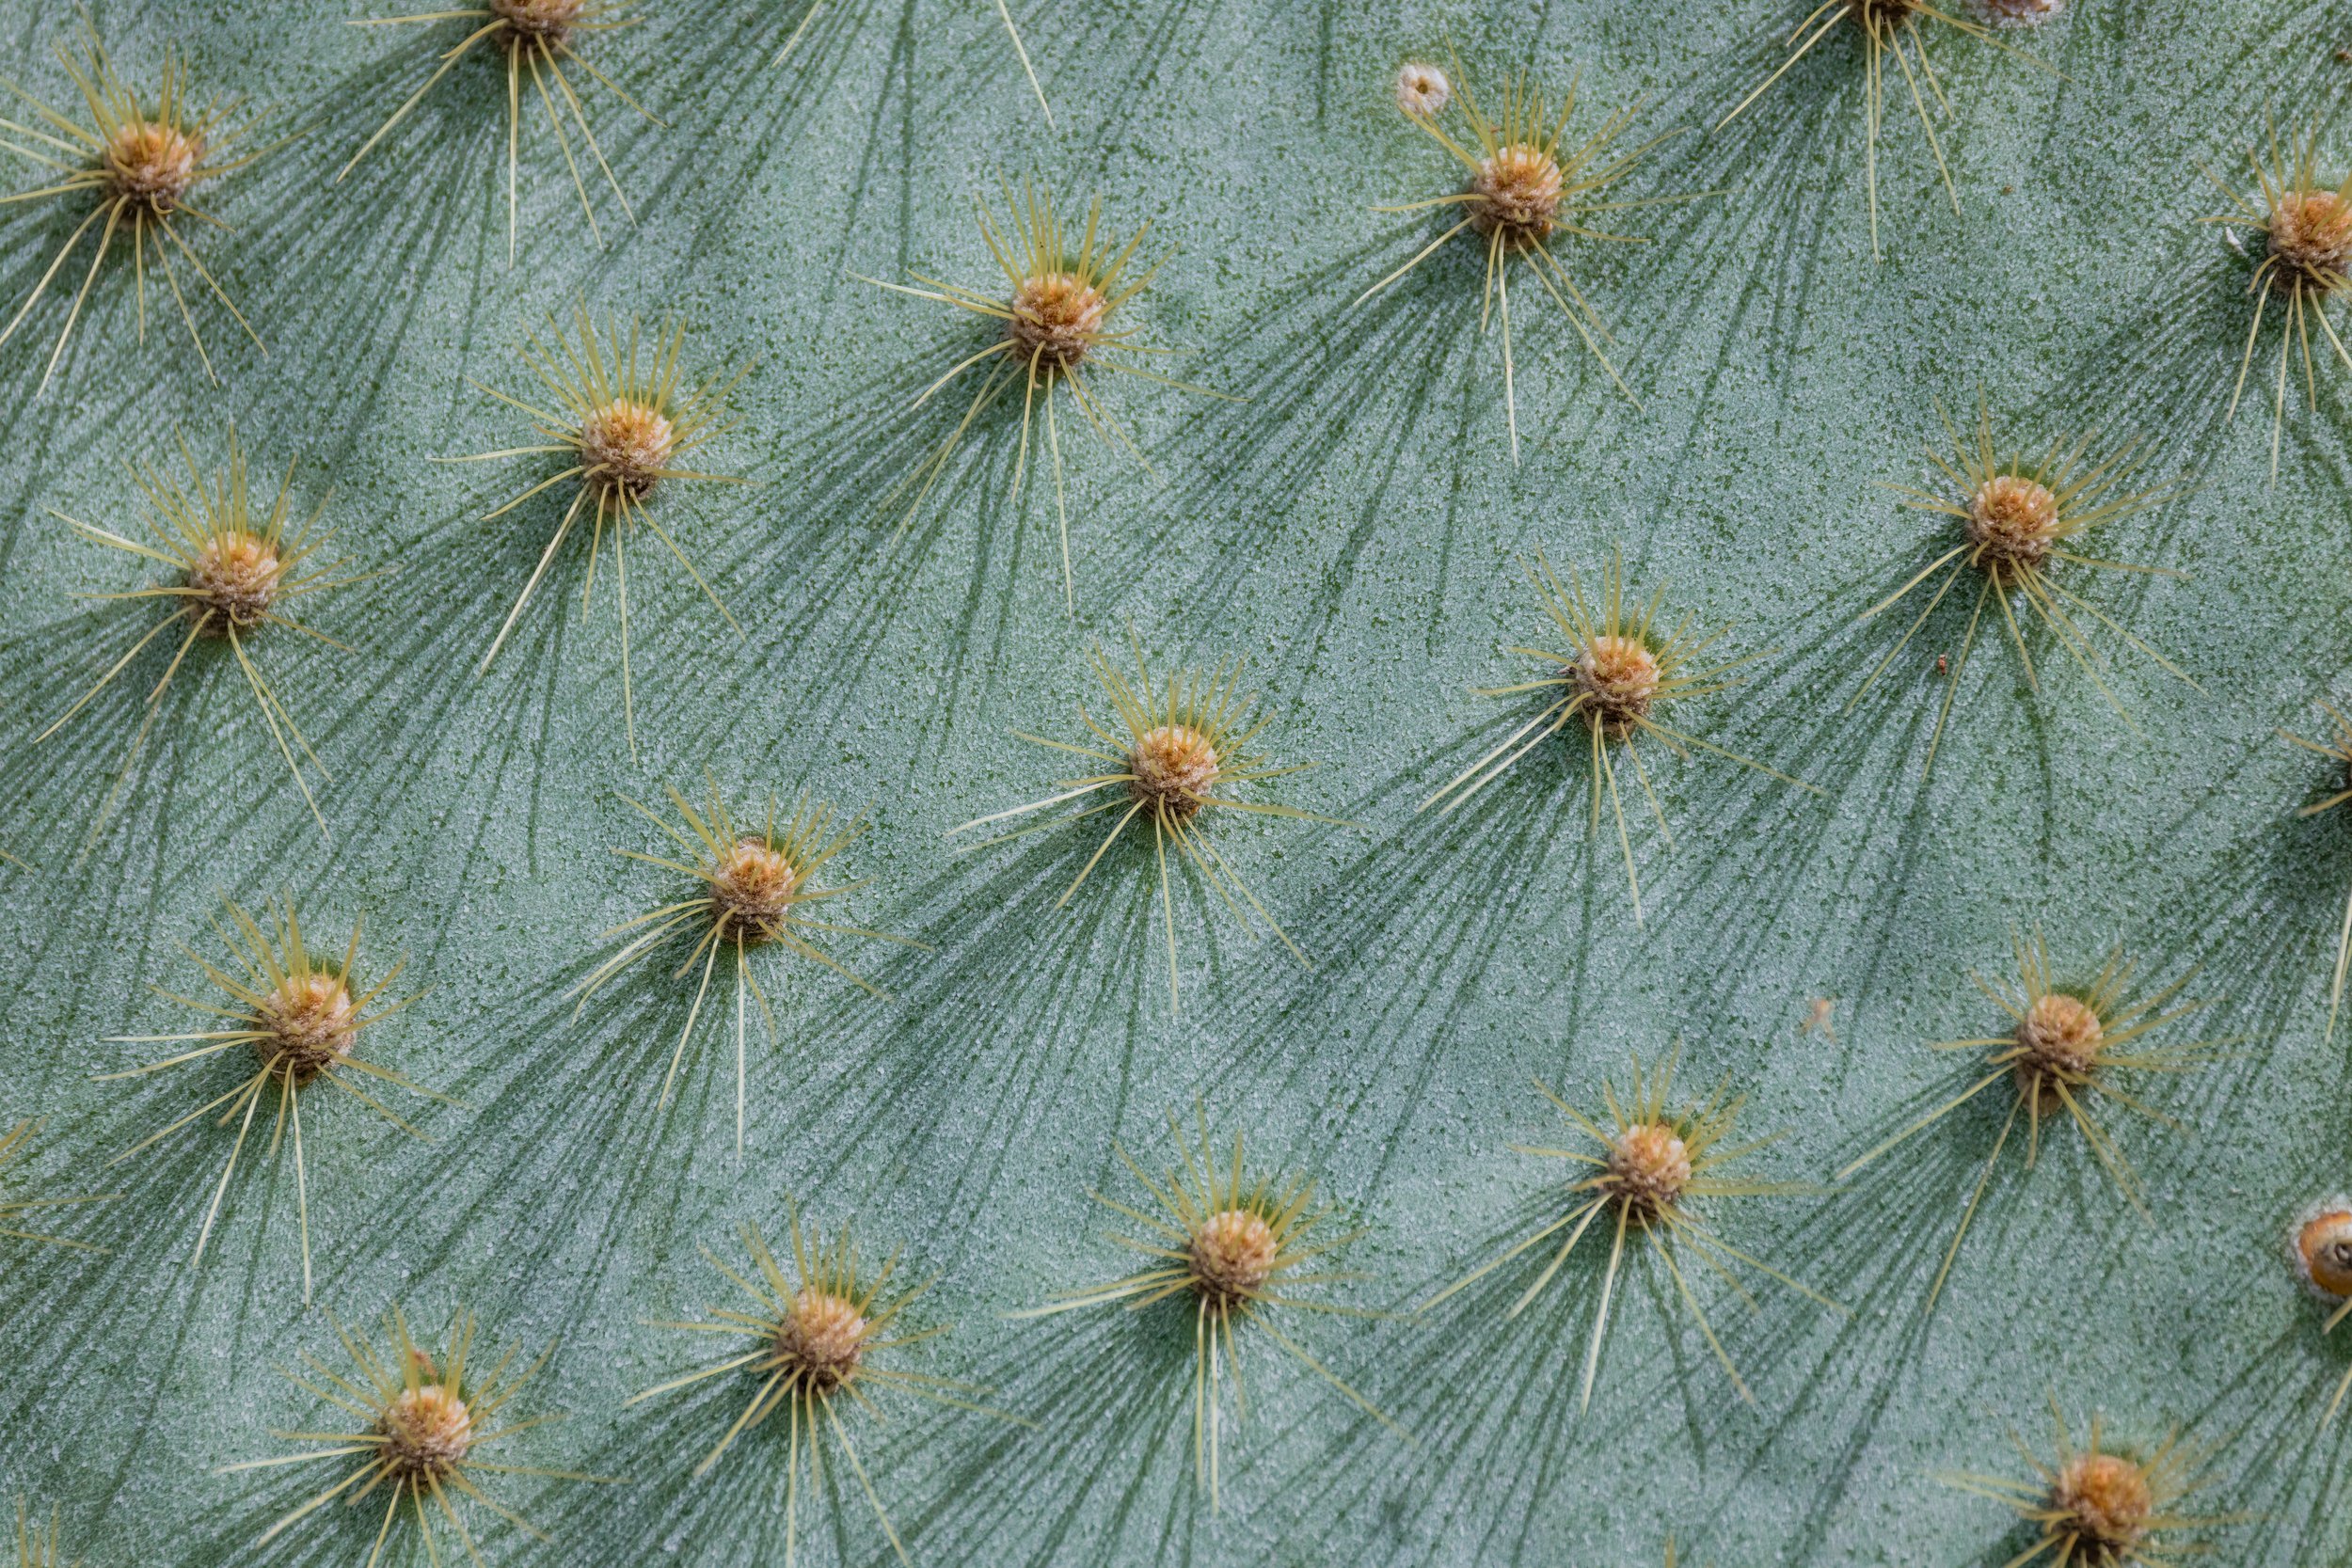 Cactus Detail. Galapagos, Ecuador (Oct. 2023)